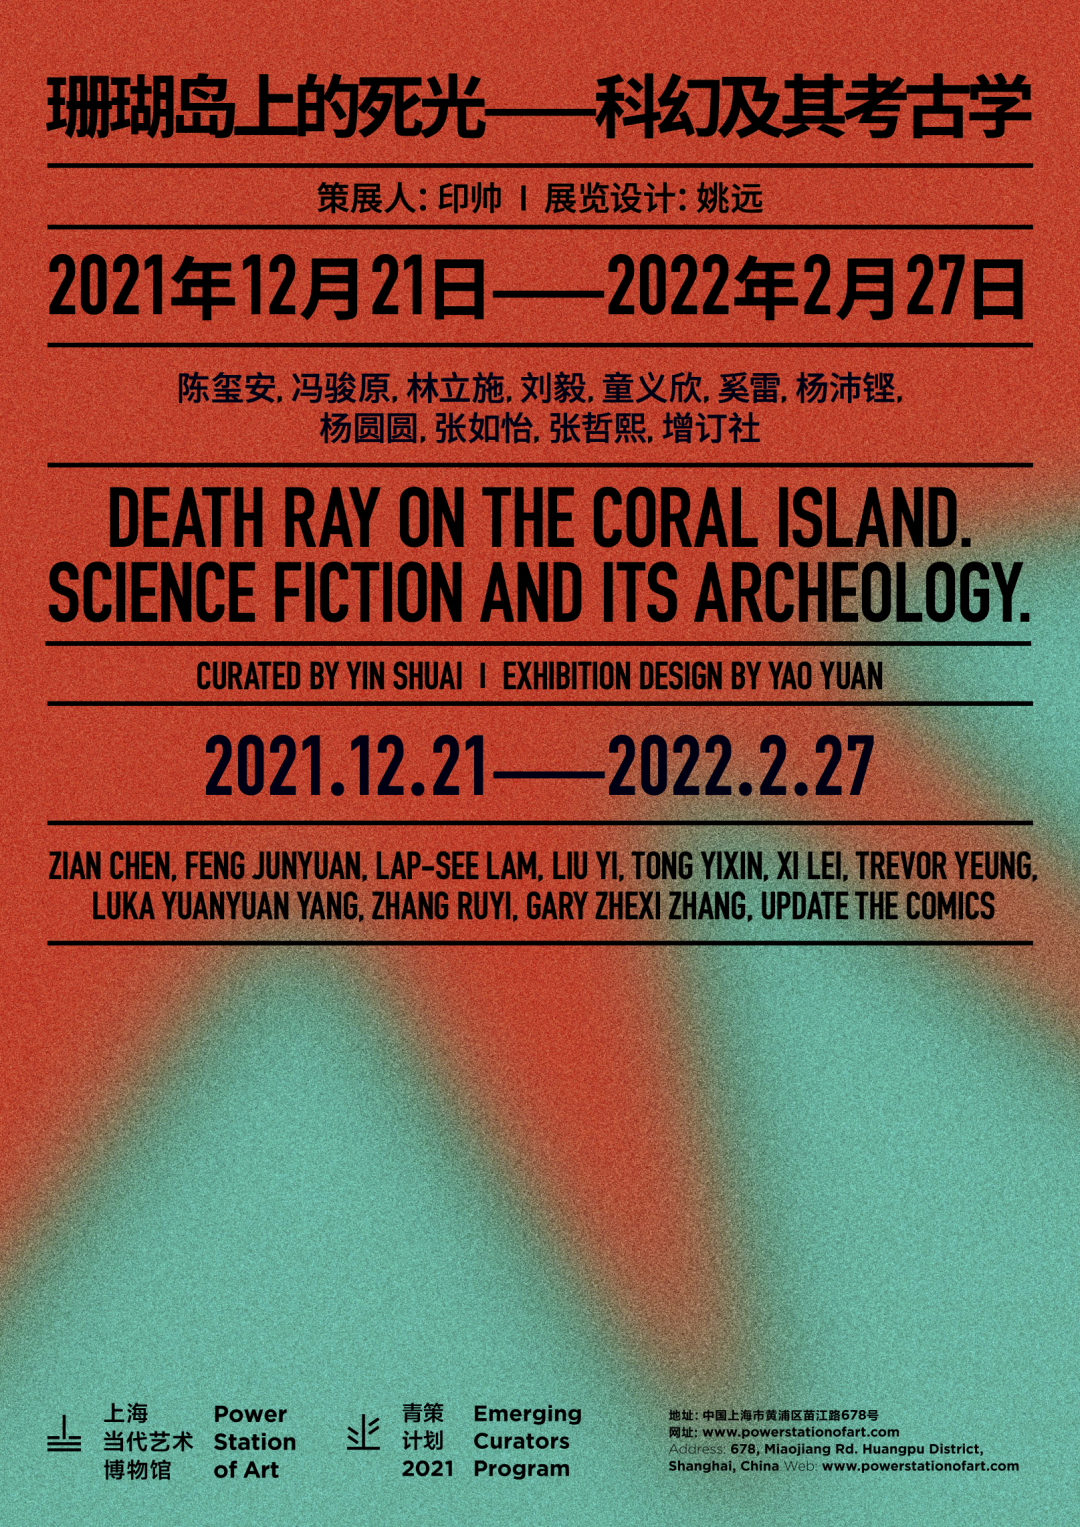 楊沛鏗參與上海當代藝術博物館群展“珊瑚島上的死光–科幻及其考古學”